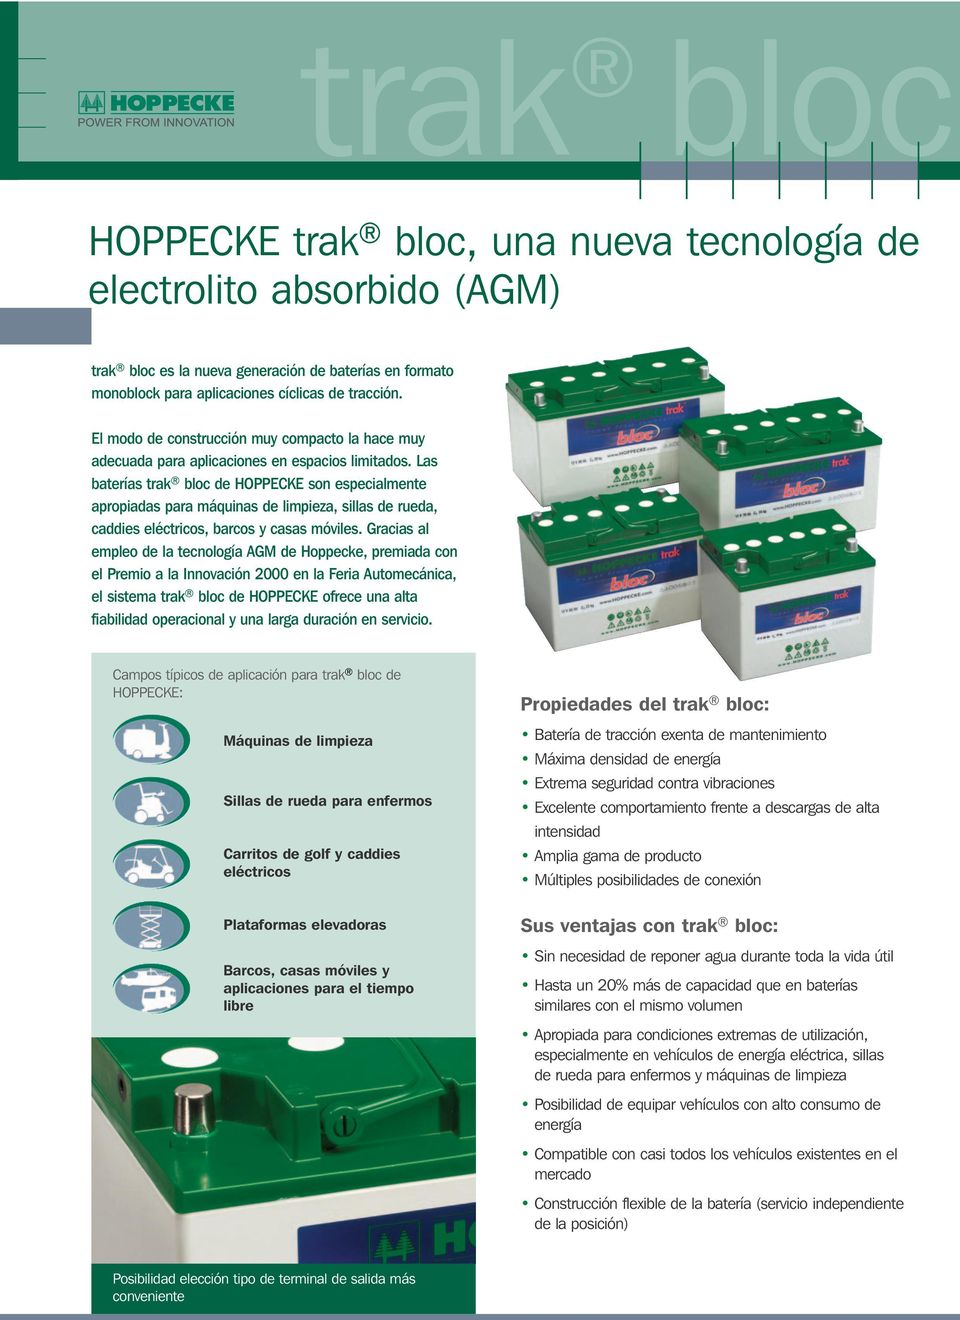 Las baterías trak bloc de HOPPECKE son especialmente apropiadas para máquinas de limpieza, sillas de rueda, caddies eléctricos, barcos y casas móviles.